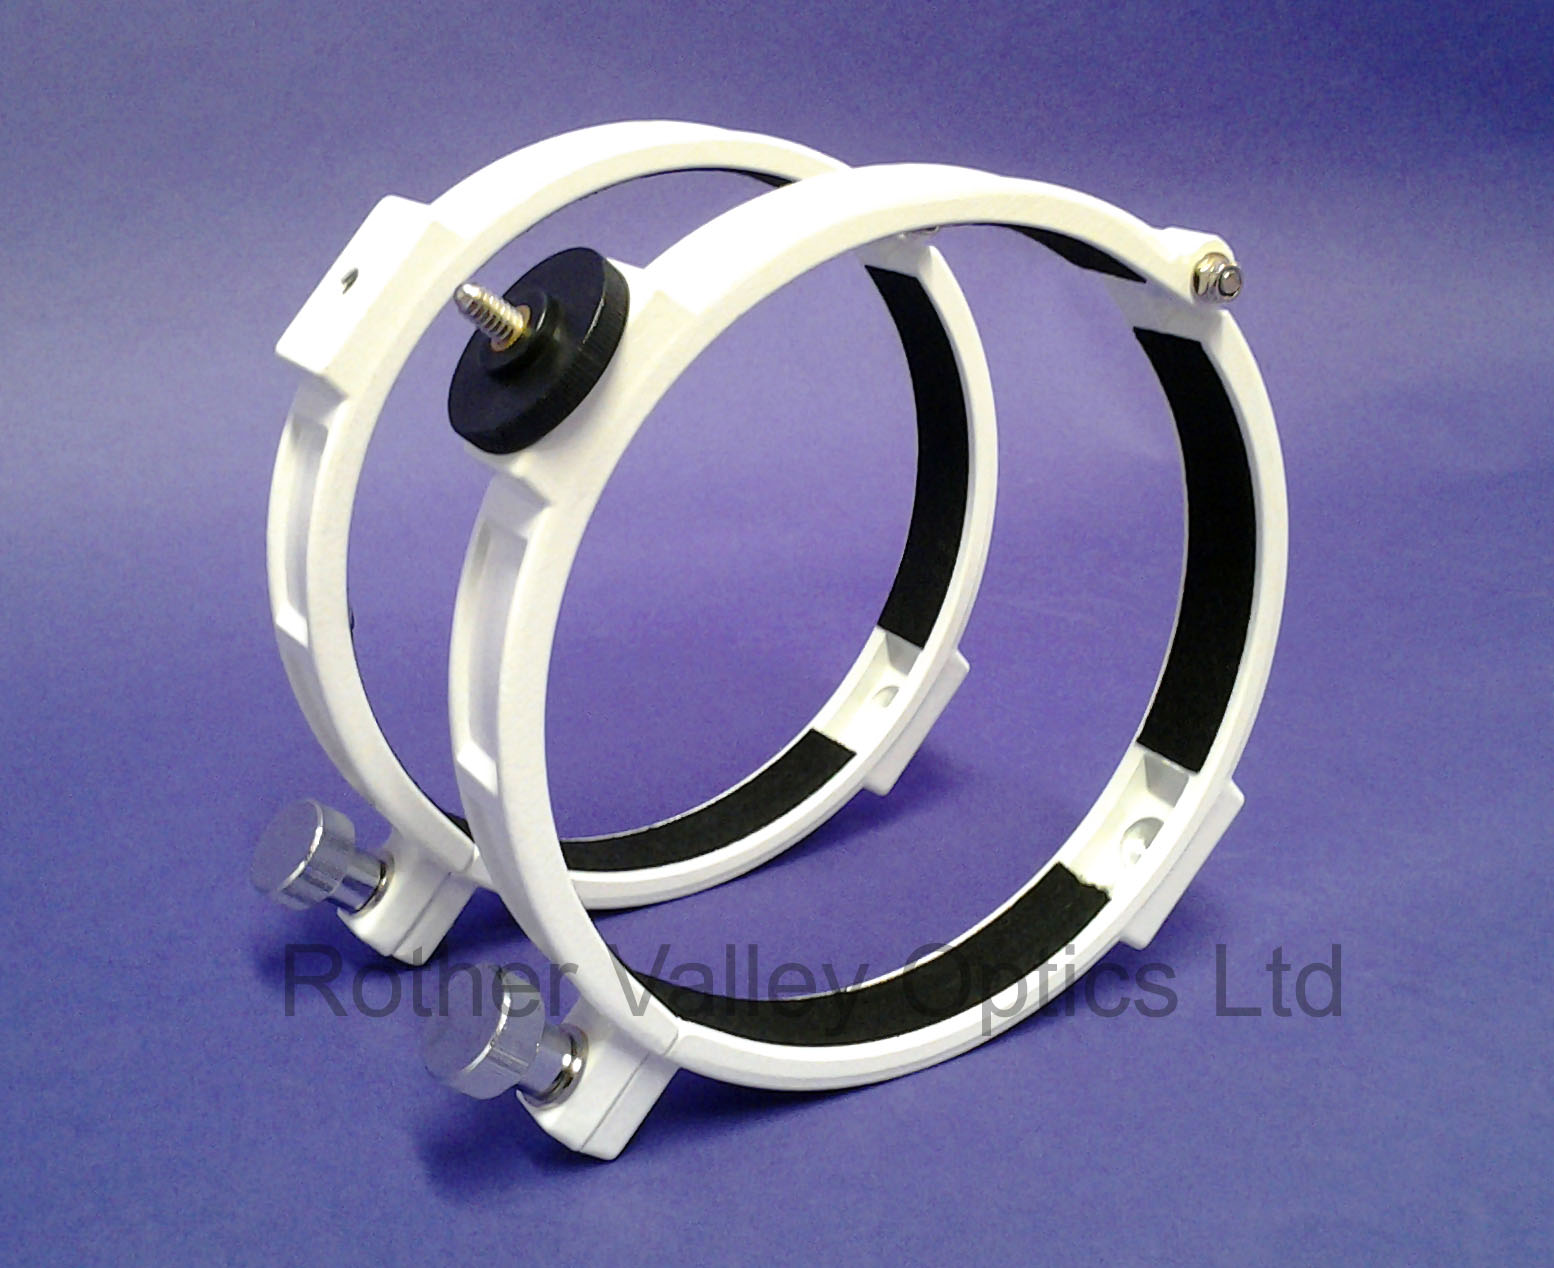 SkyWatcher Tube Ring Set - Rother Valley Optics Ltd Custom Made Telescope Tube Rings